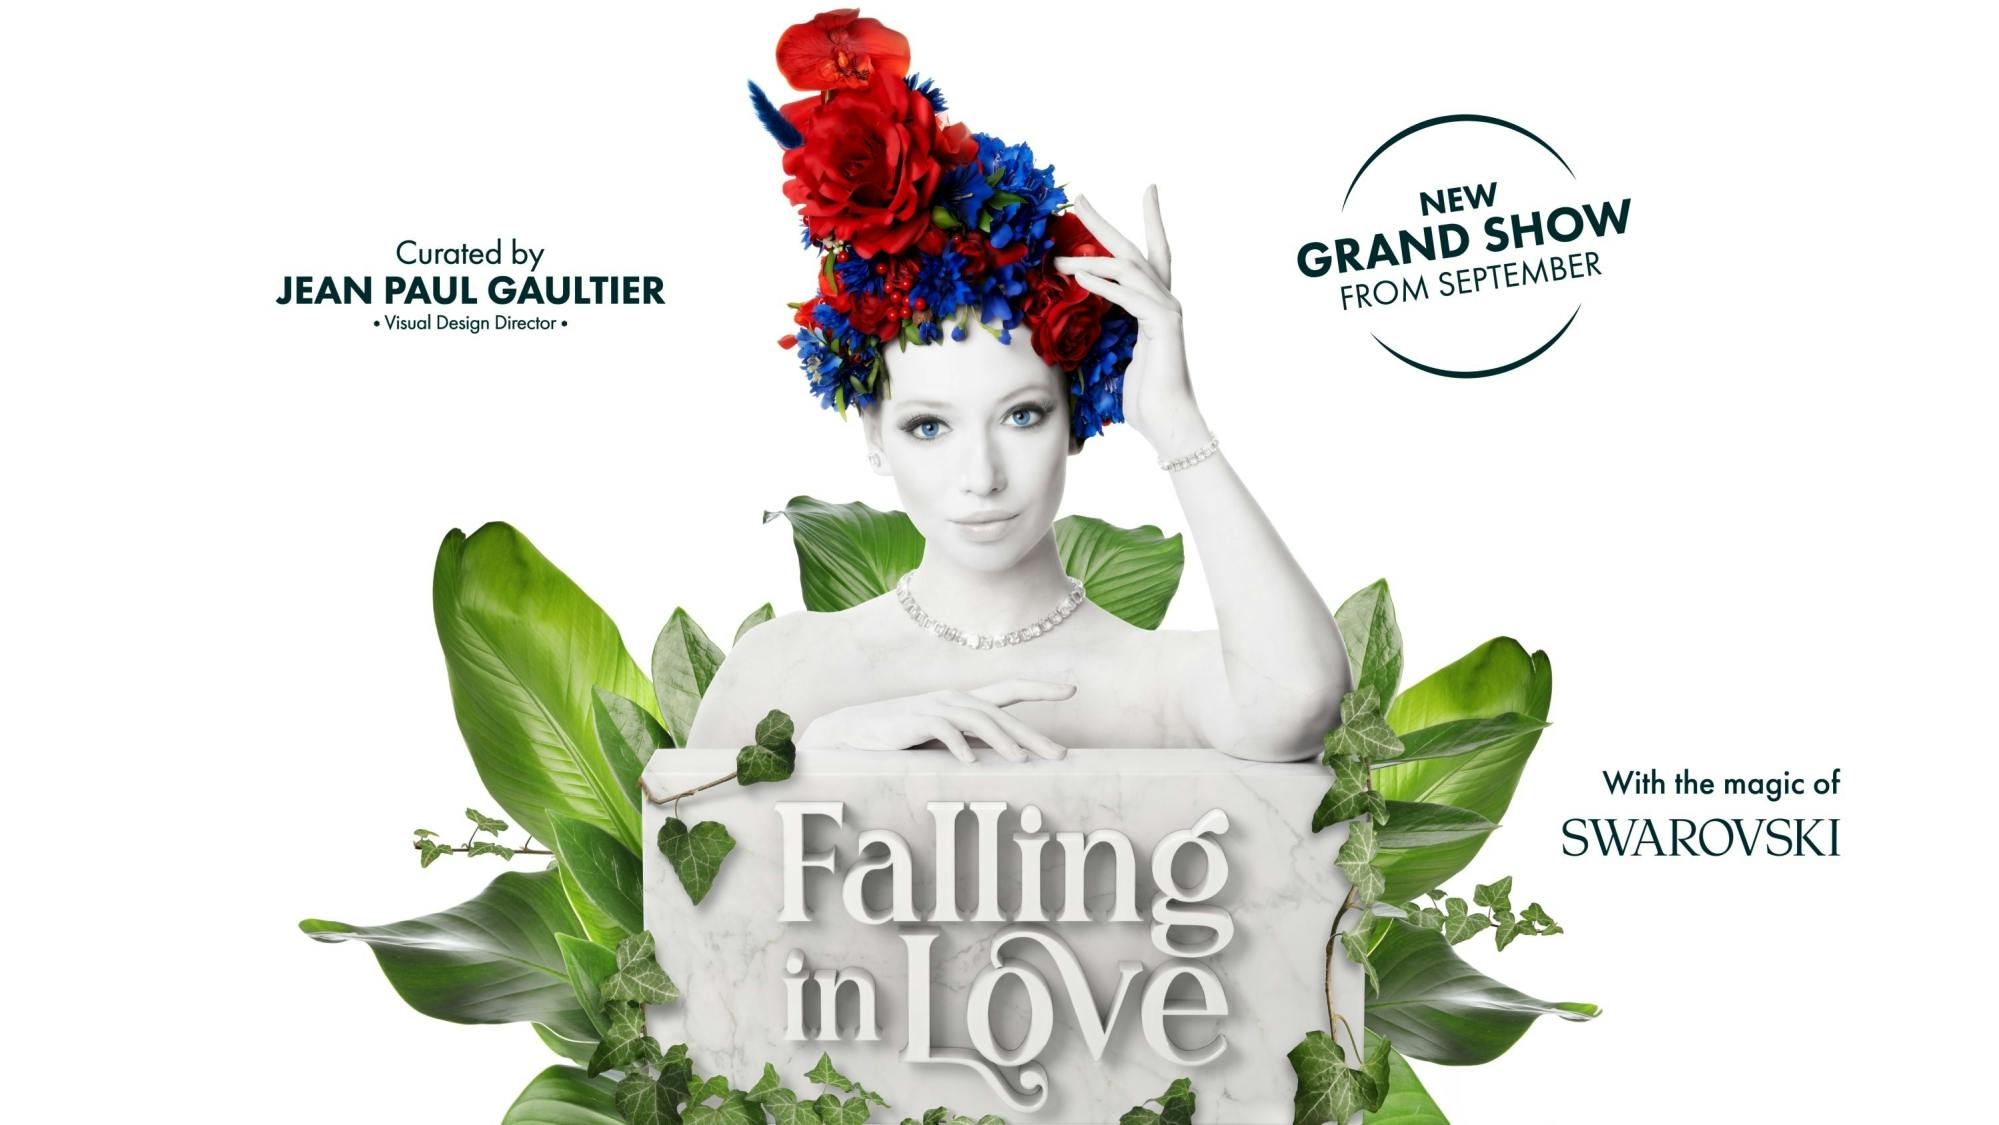 Biglietti per il grande spettacolo Falling in Love al Friedrichstadt-Palast di Berlino